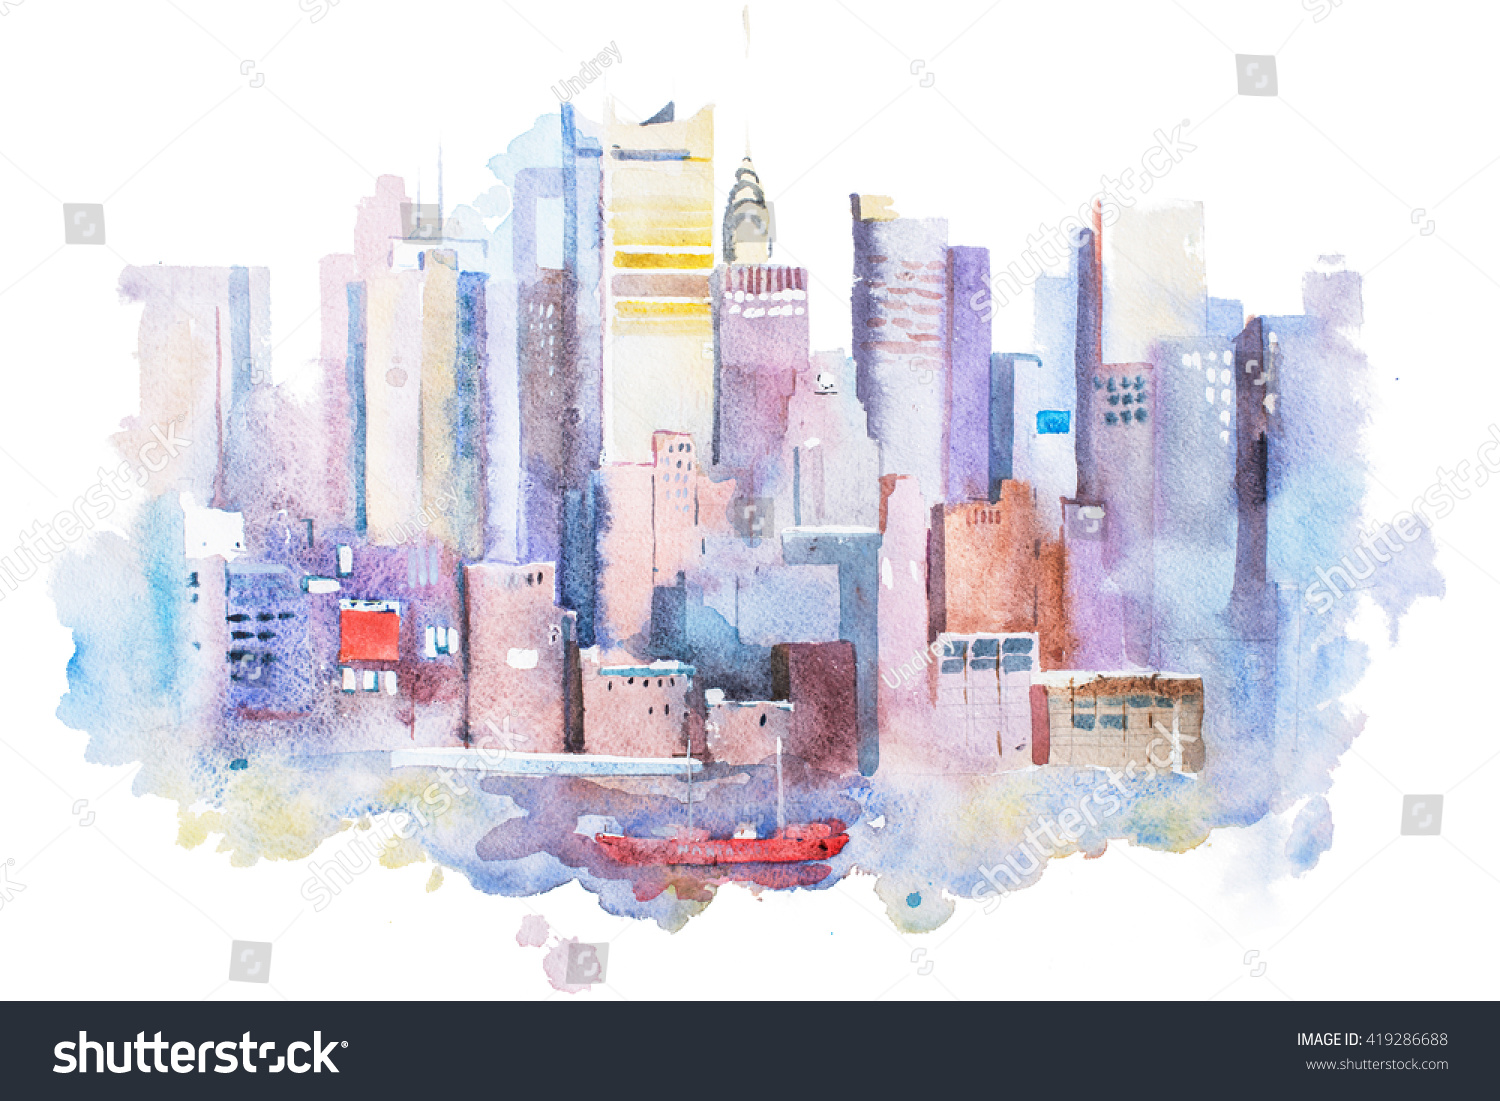 米国ニューヨークの都市景観の水彩画 マンハッタン水彩画 のイラスト素材